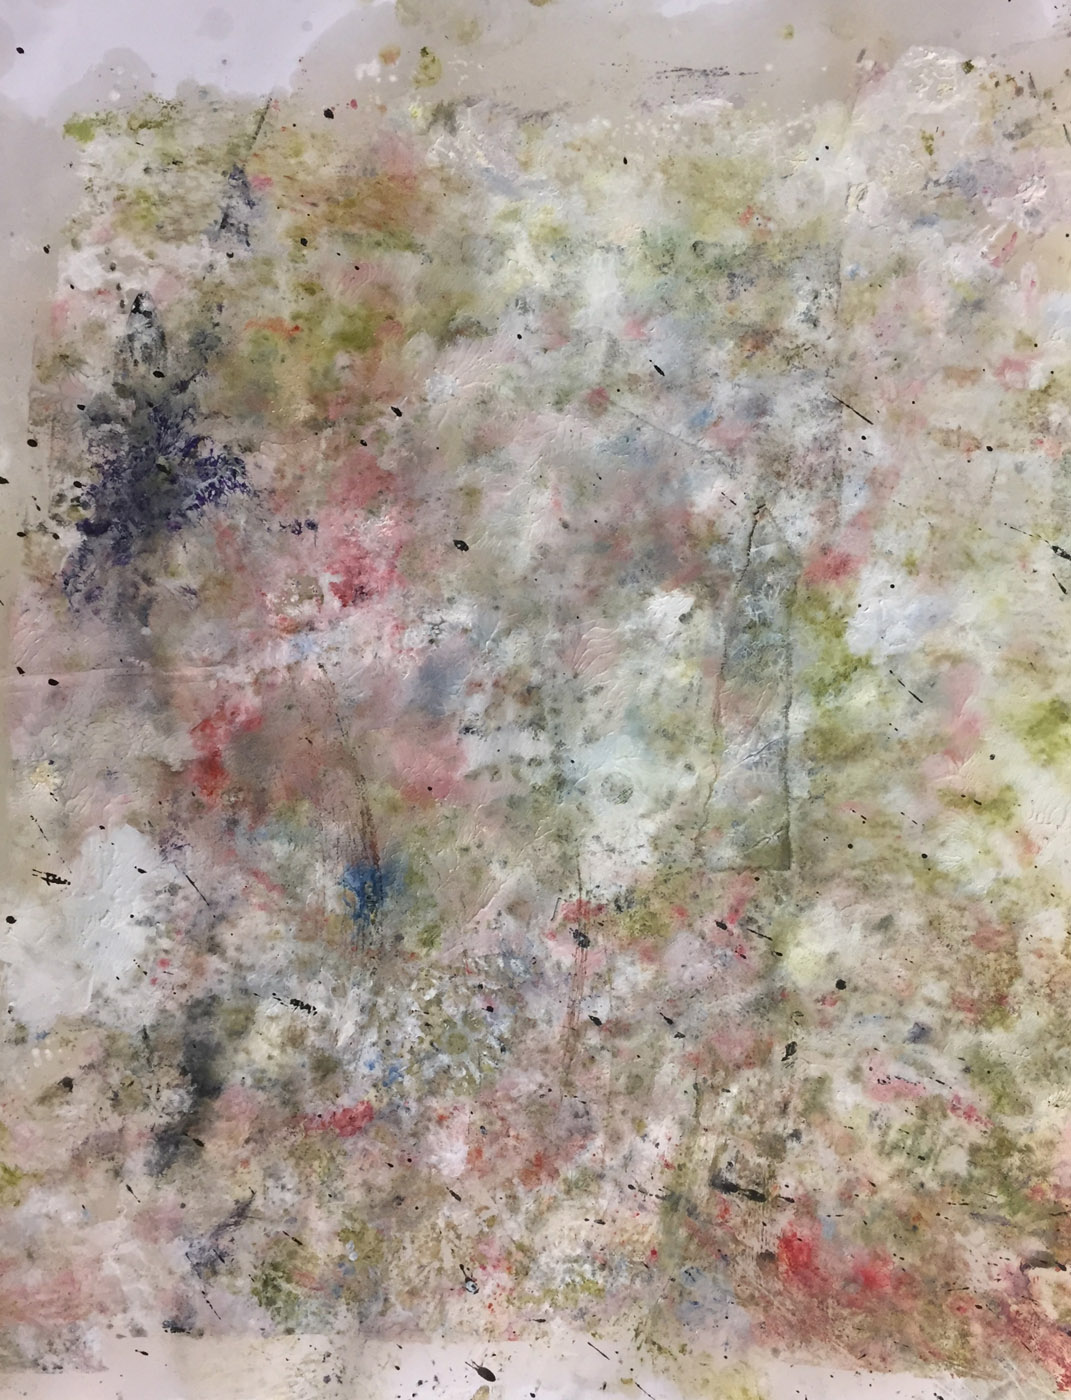 MARC FELD 2019 TRACES OF JOHN 4 Huile, pigmnent, acrylique et gouache sur papier 50 x 65 cm